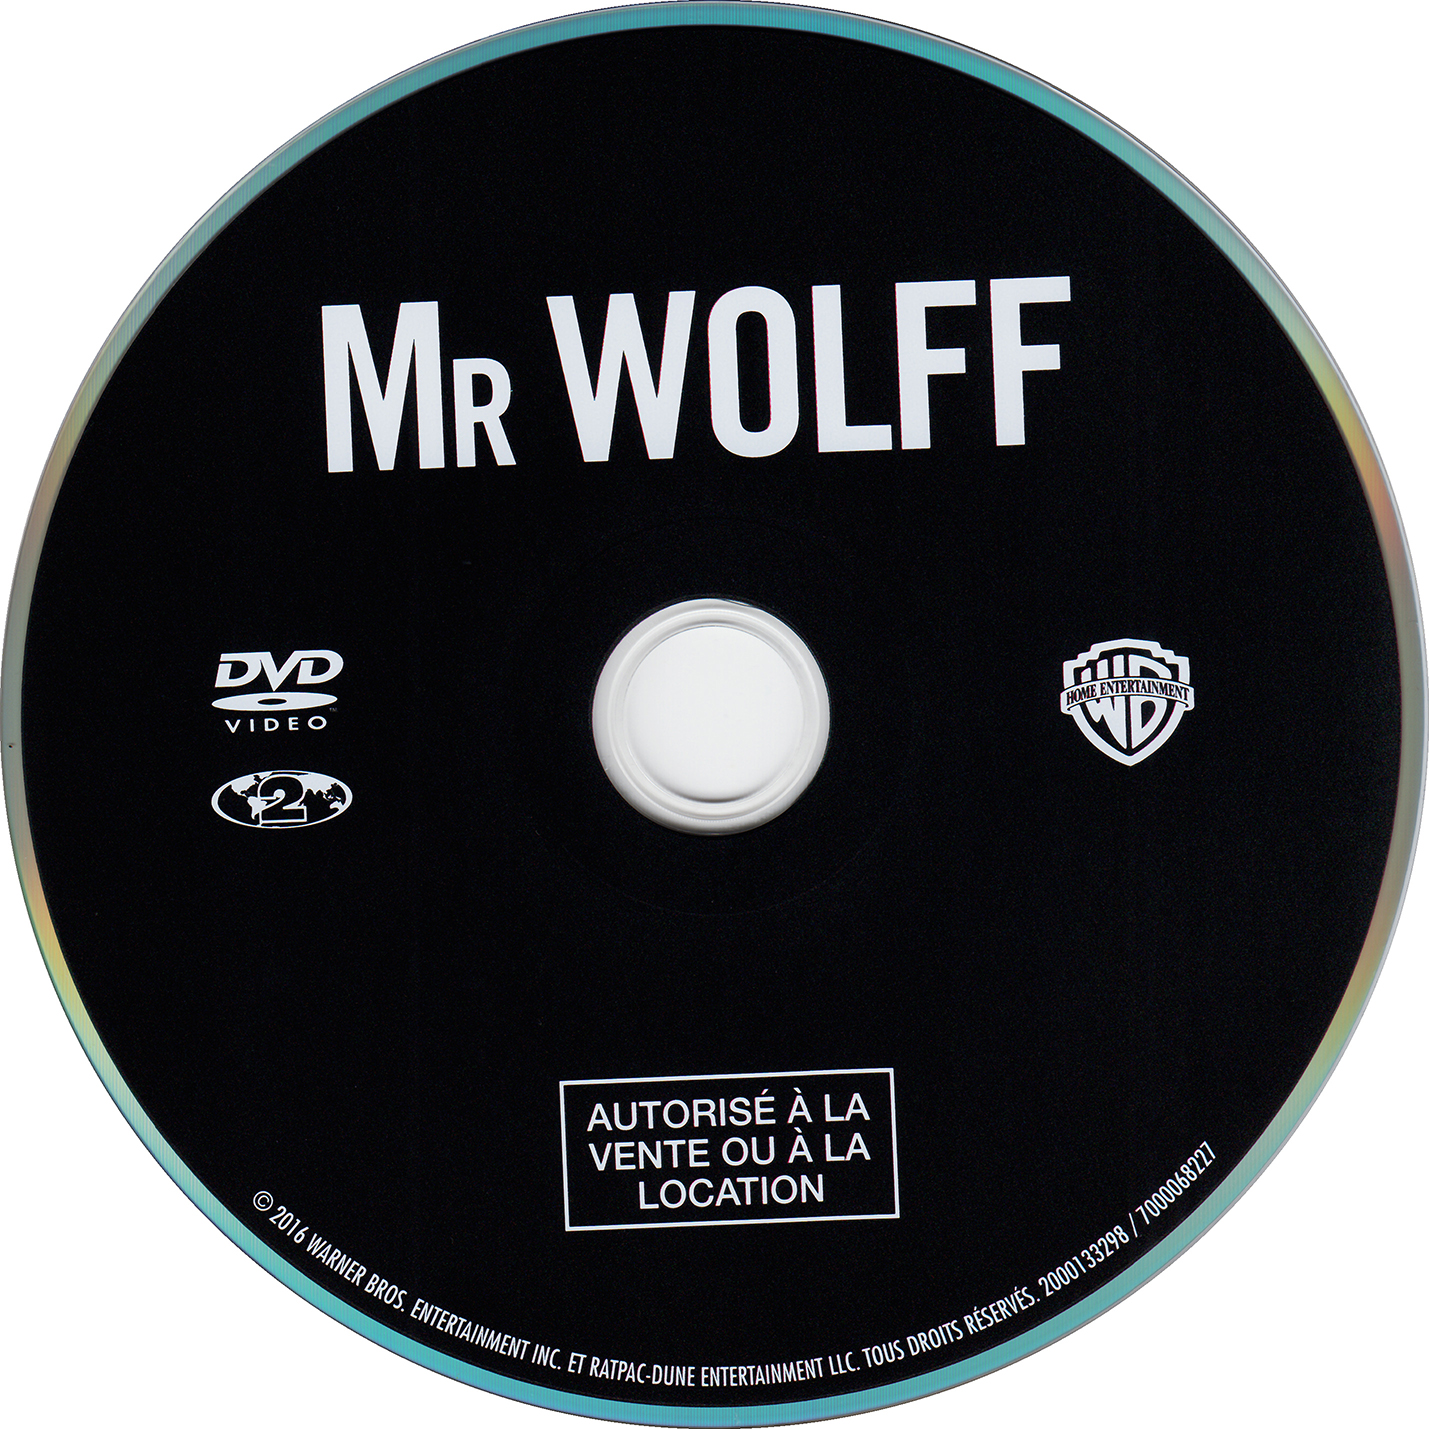 Mr wolff